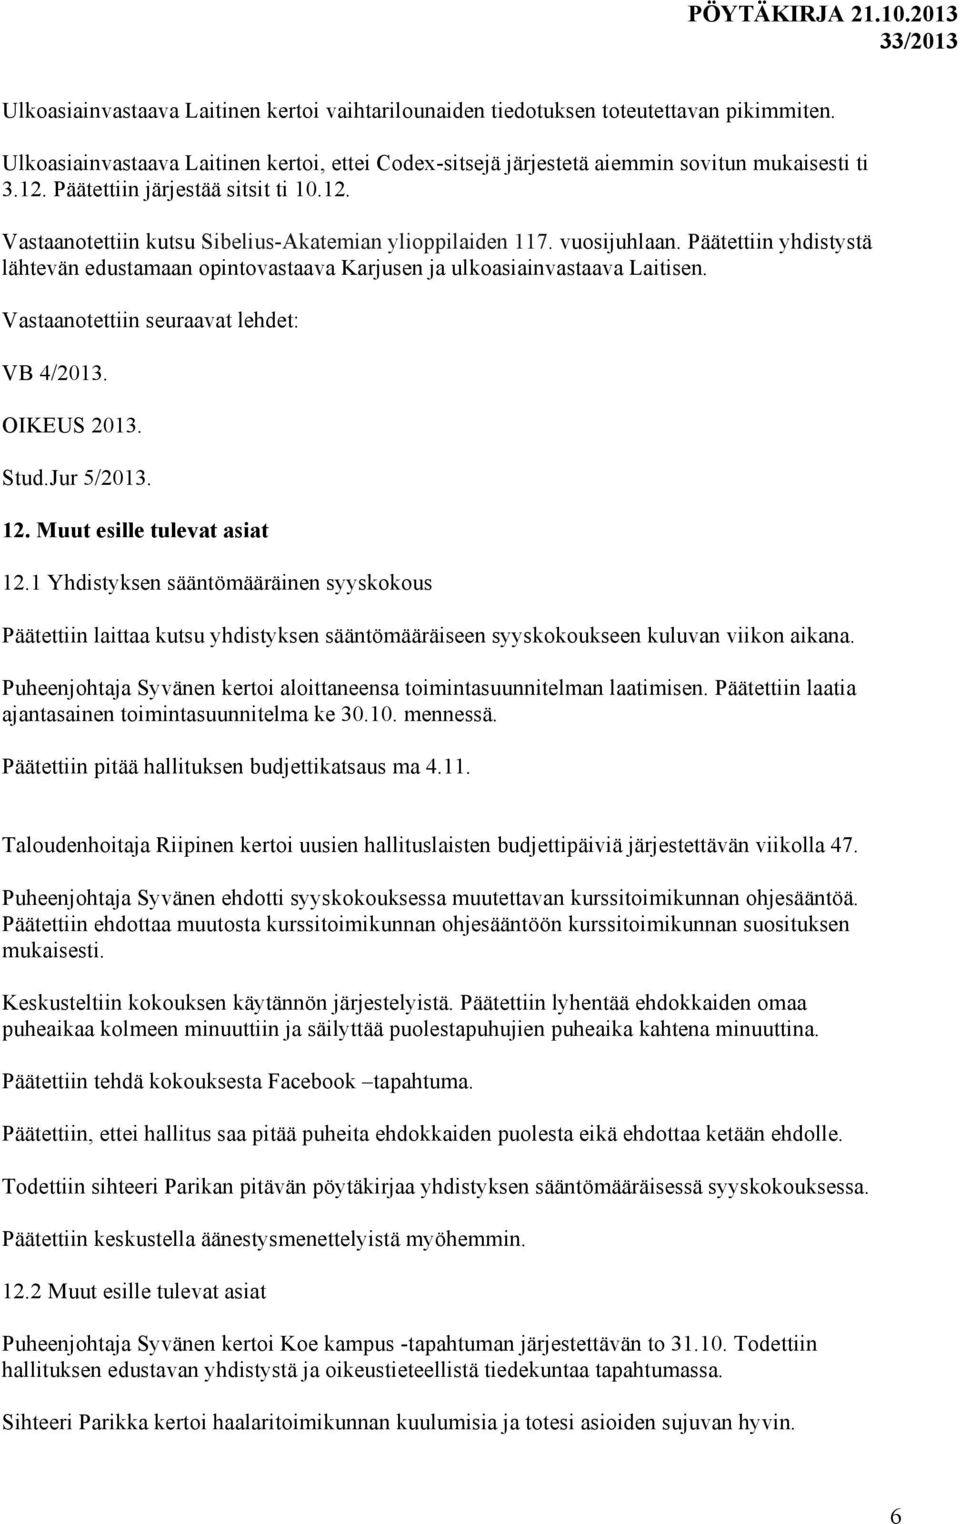 Päätettiin yhdistystä lähtevän edustamaan opintovastaava Karjusen ja ulkoasiainvastaava Laitisen. Vastaanotettiin seuraavat lehdet: VB 4/2013. OIKEUS 2013. Stud.Jur 5/2013. 12.